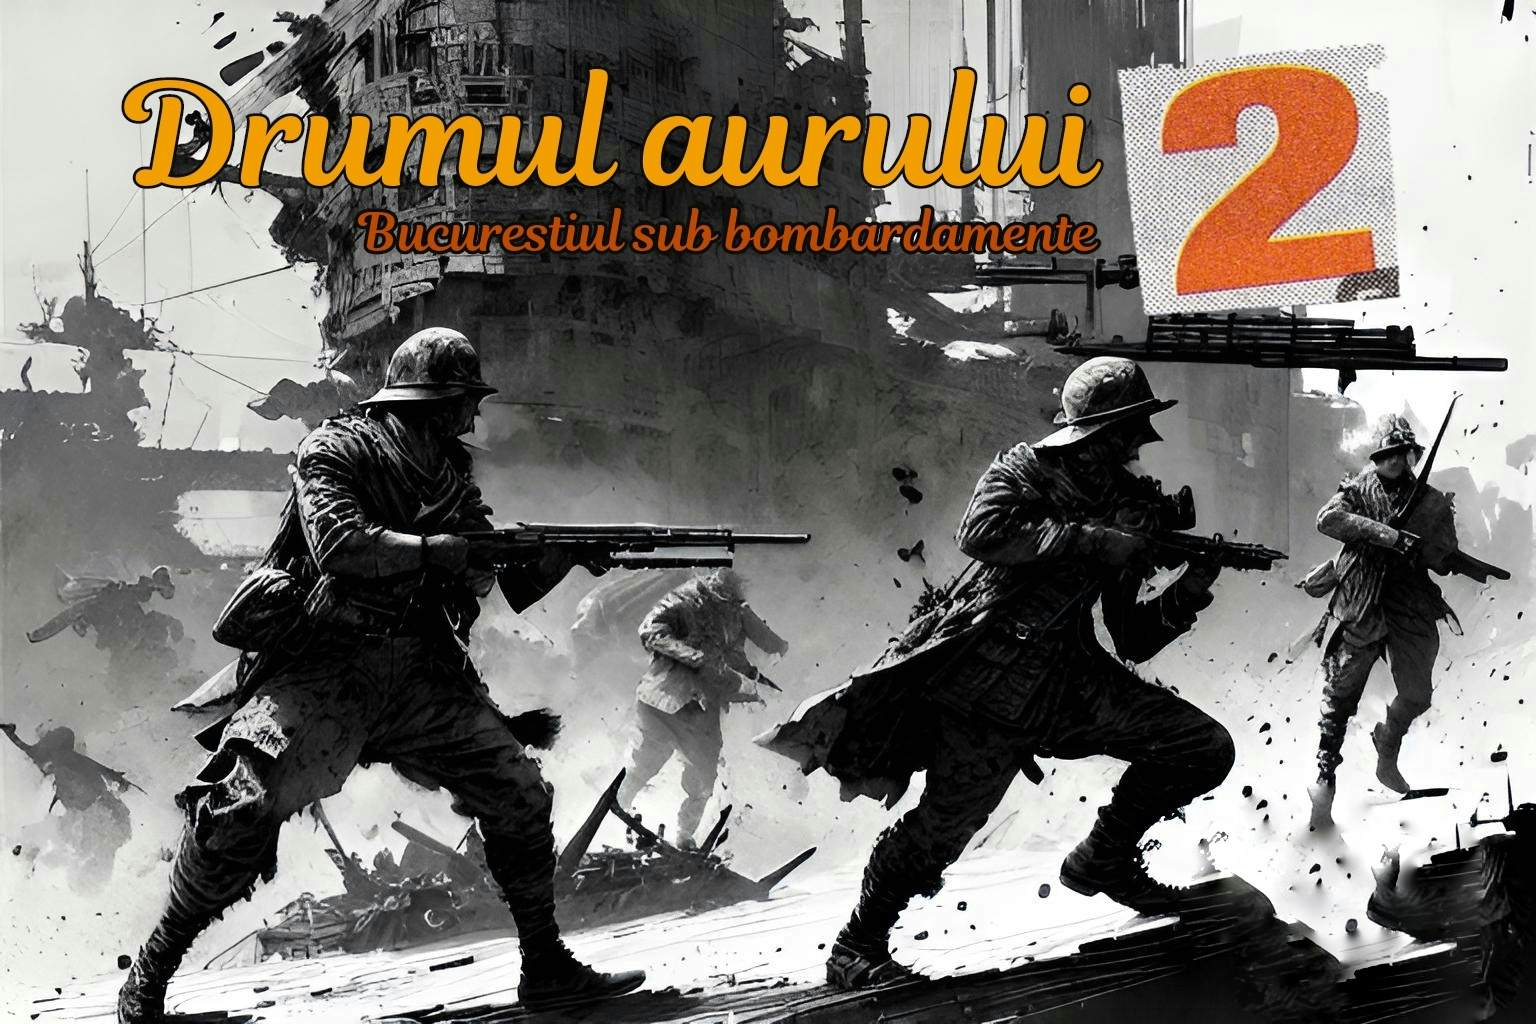 Drumul aurului 2 - Bucurestiul sub bombardamente image